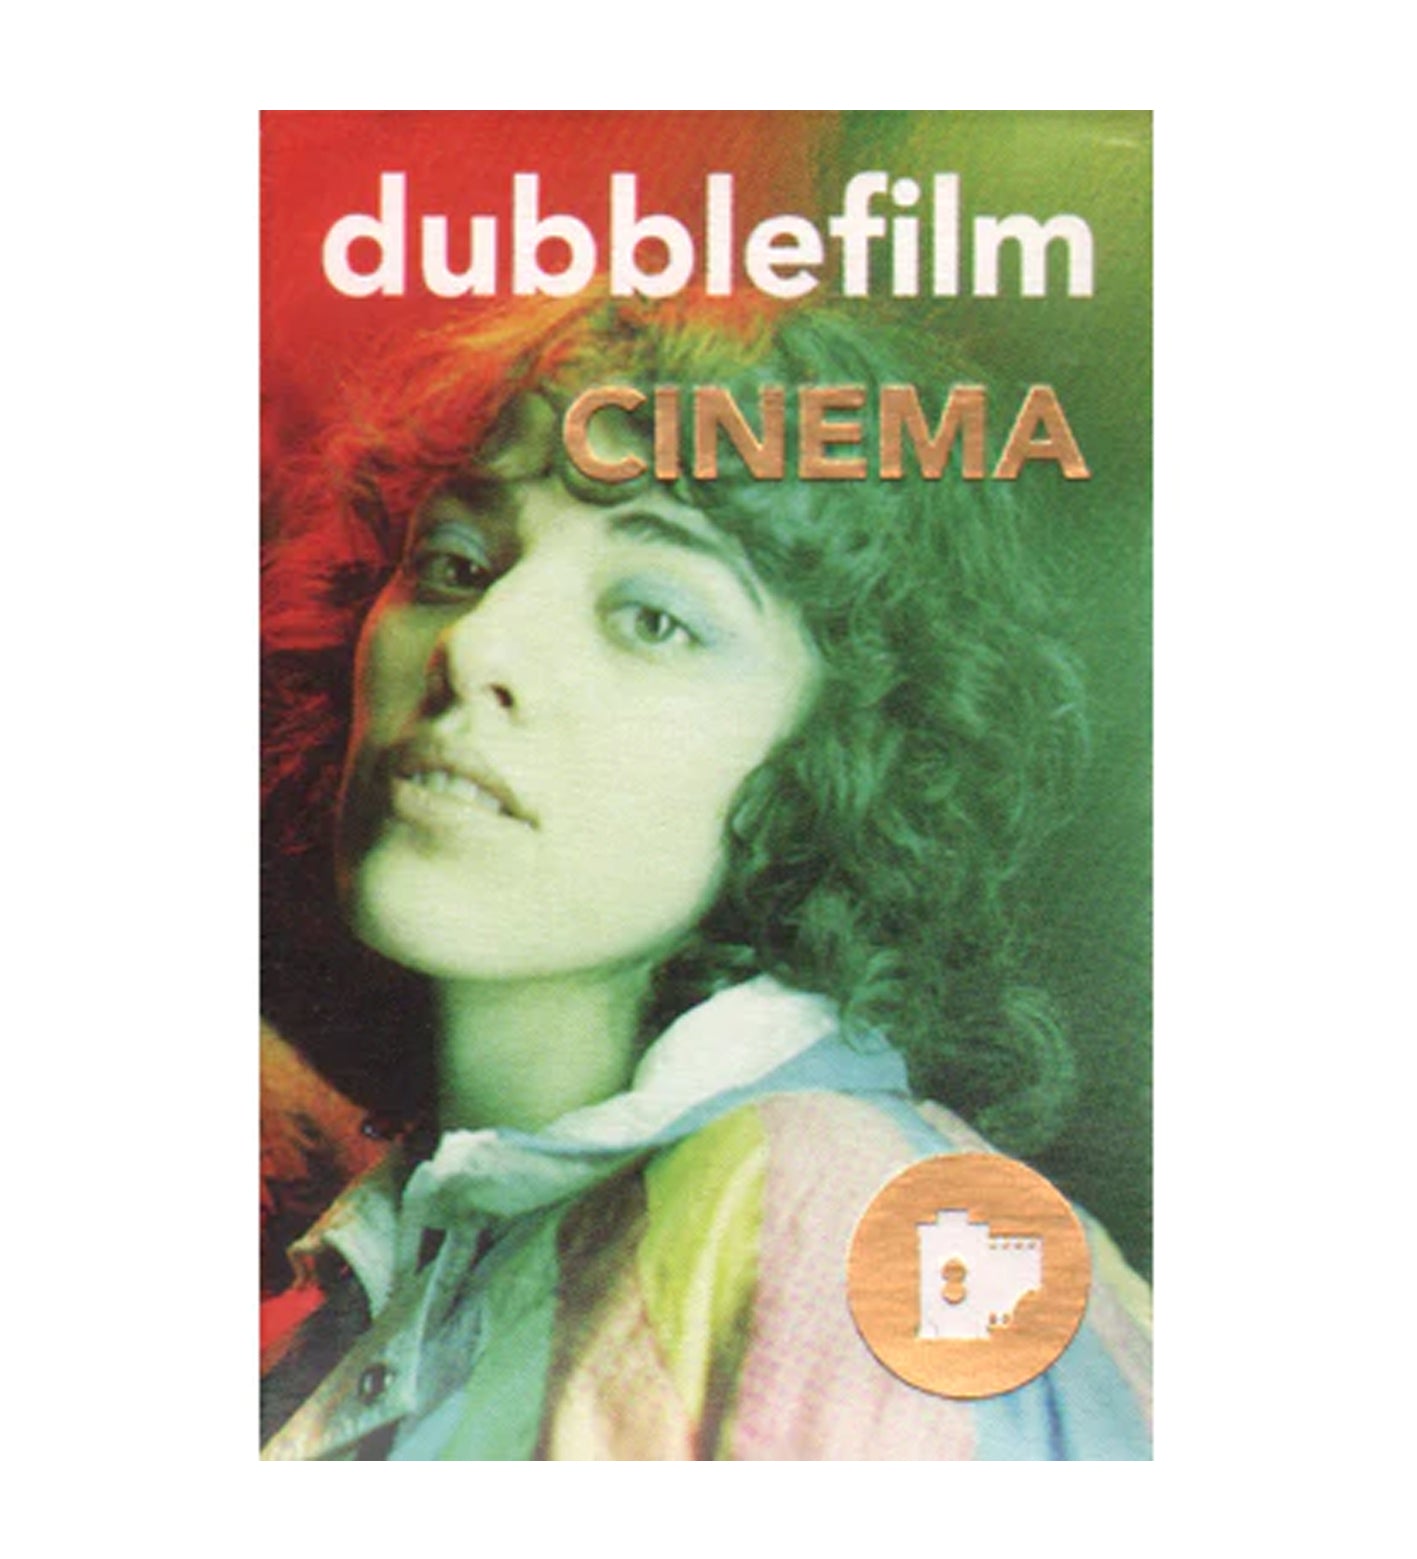 Dubblefilm Cinema ISO 800 35mm Film 36 Exposures (£16.00 incl VAT)